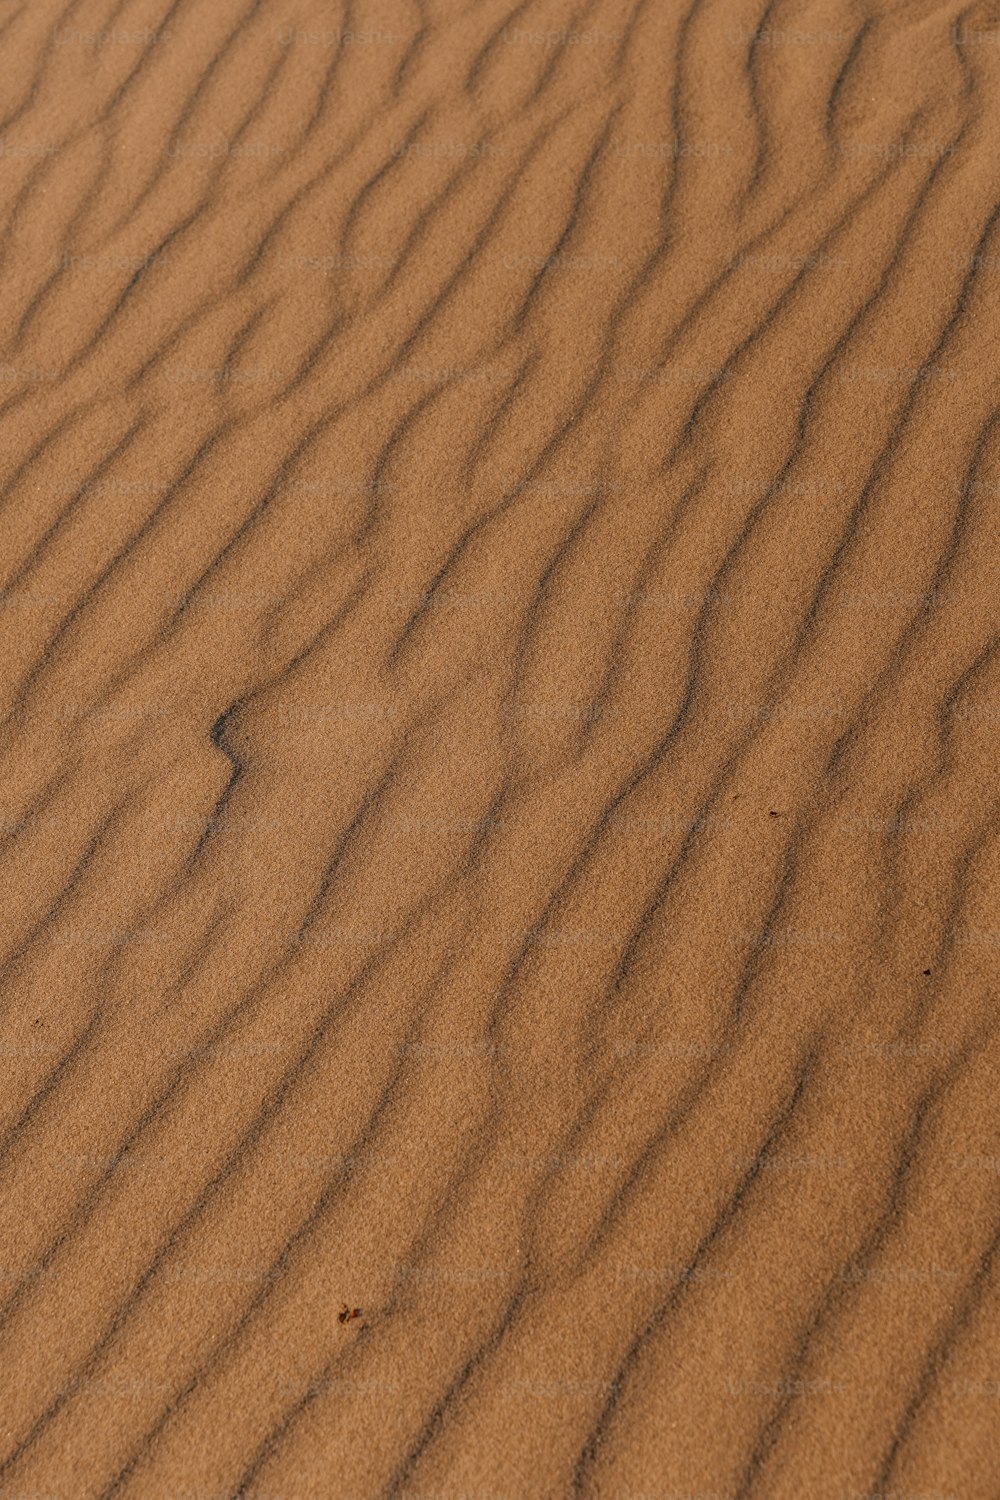 uma duna de areia com um pequeno pedaço de grama crescendo fora dela